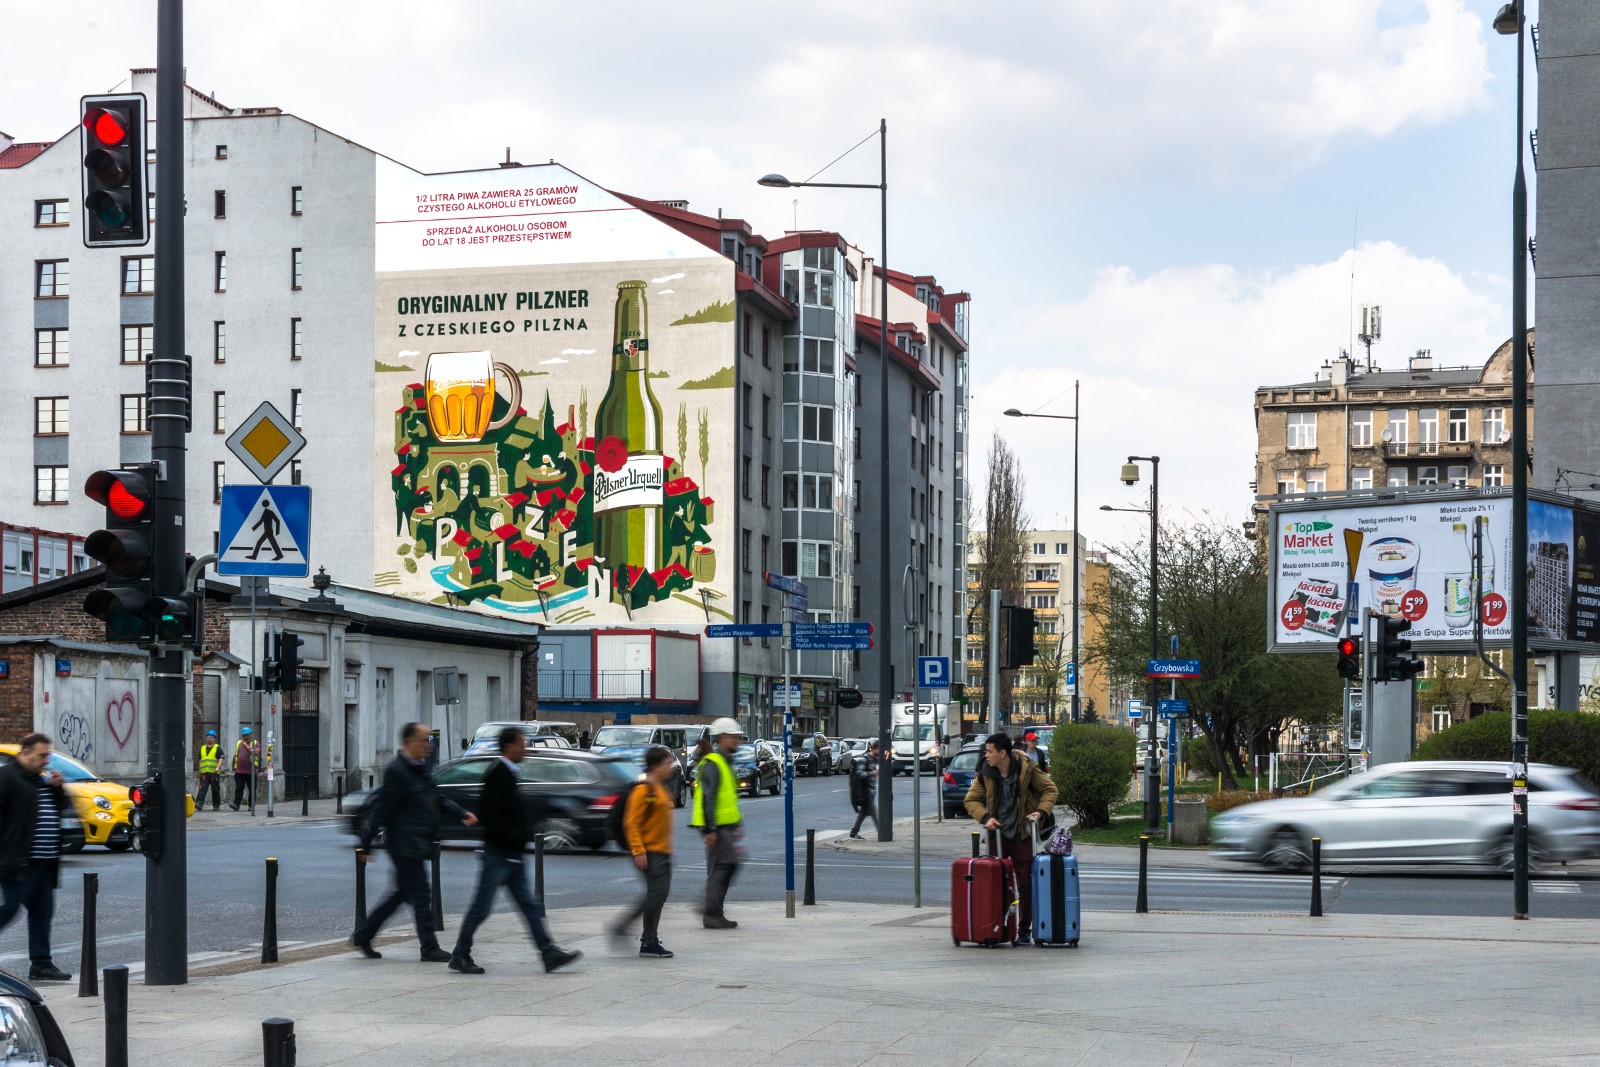 Mural Pilsner Urquell przy ulicy Żelaznej w Warszawie | Oryginalny pilzner z czeskiego Pilzna | Portfolio